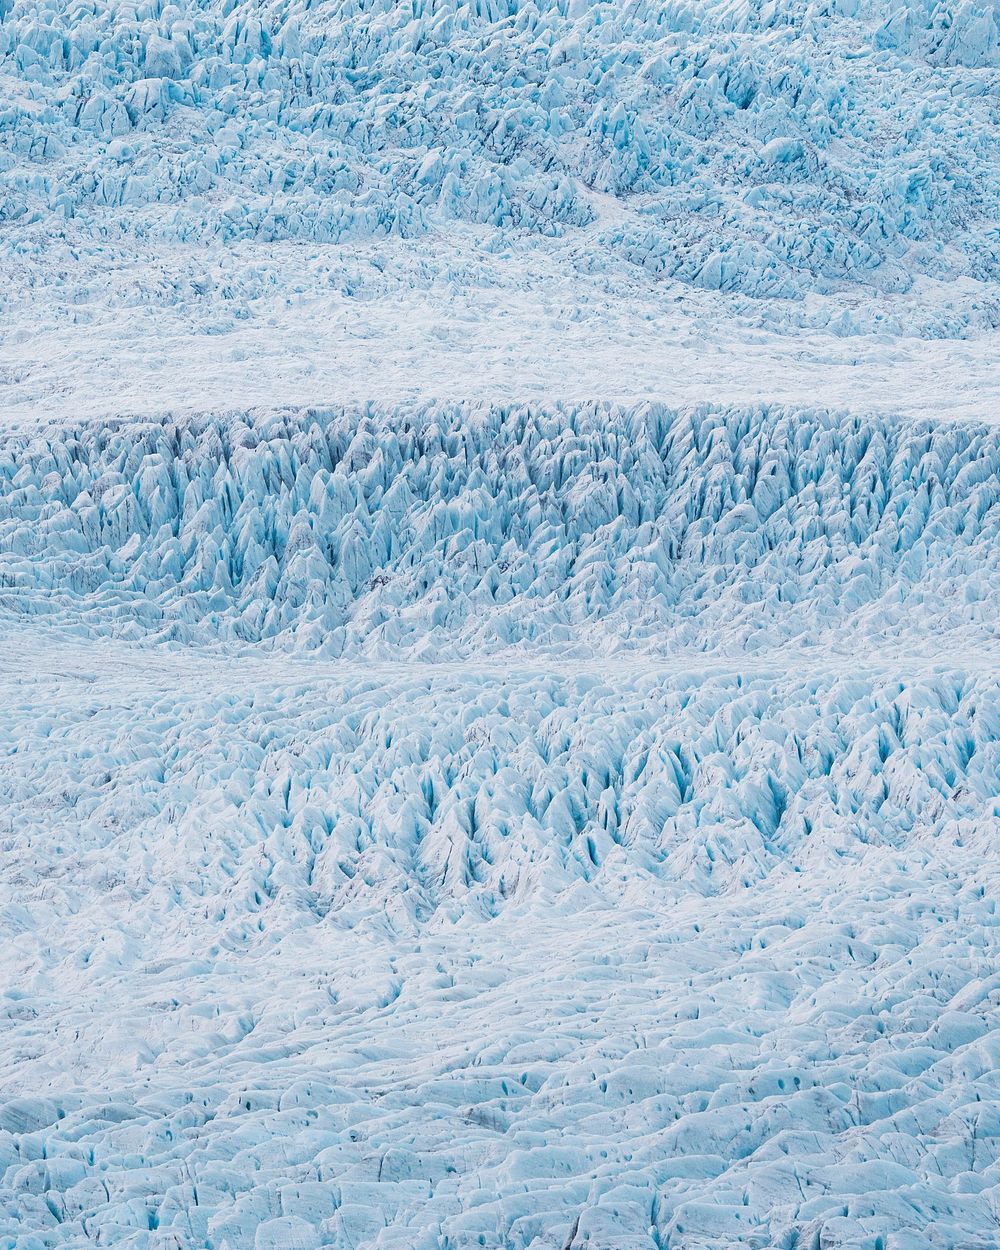 The glacier Fjallsj&ouml;kull in Iceland